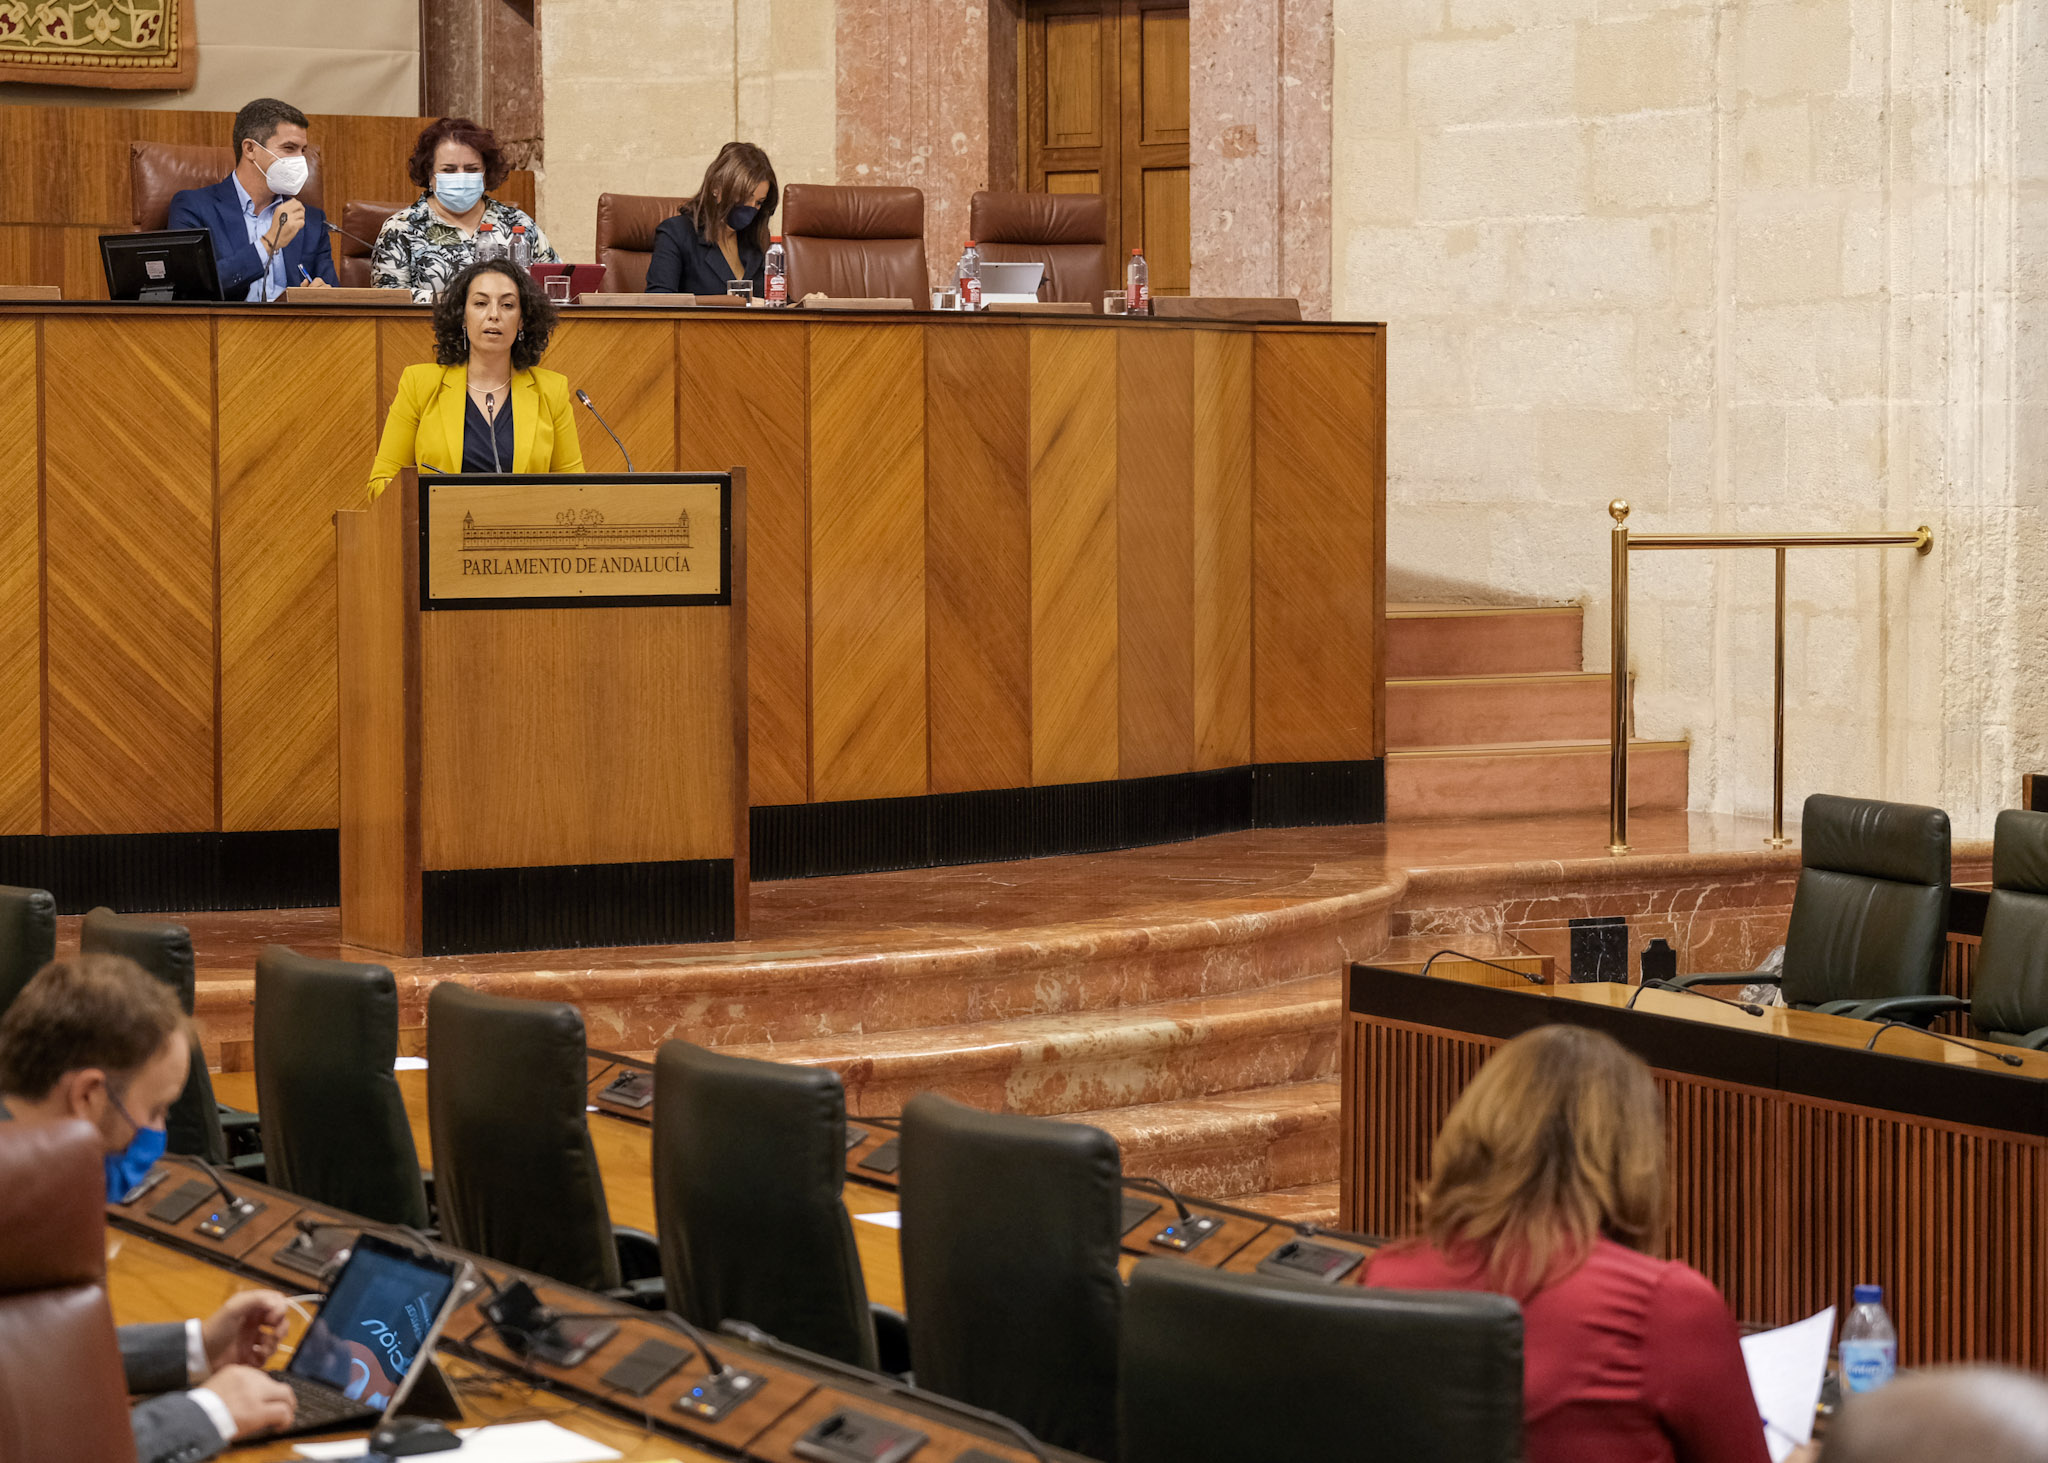  La diputada socialista María de las Mercedes Gámez dirige su interpelación a la consejera de Agricultura  